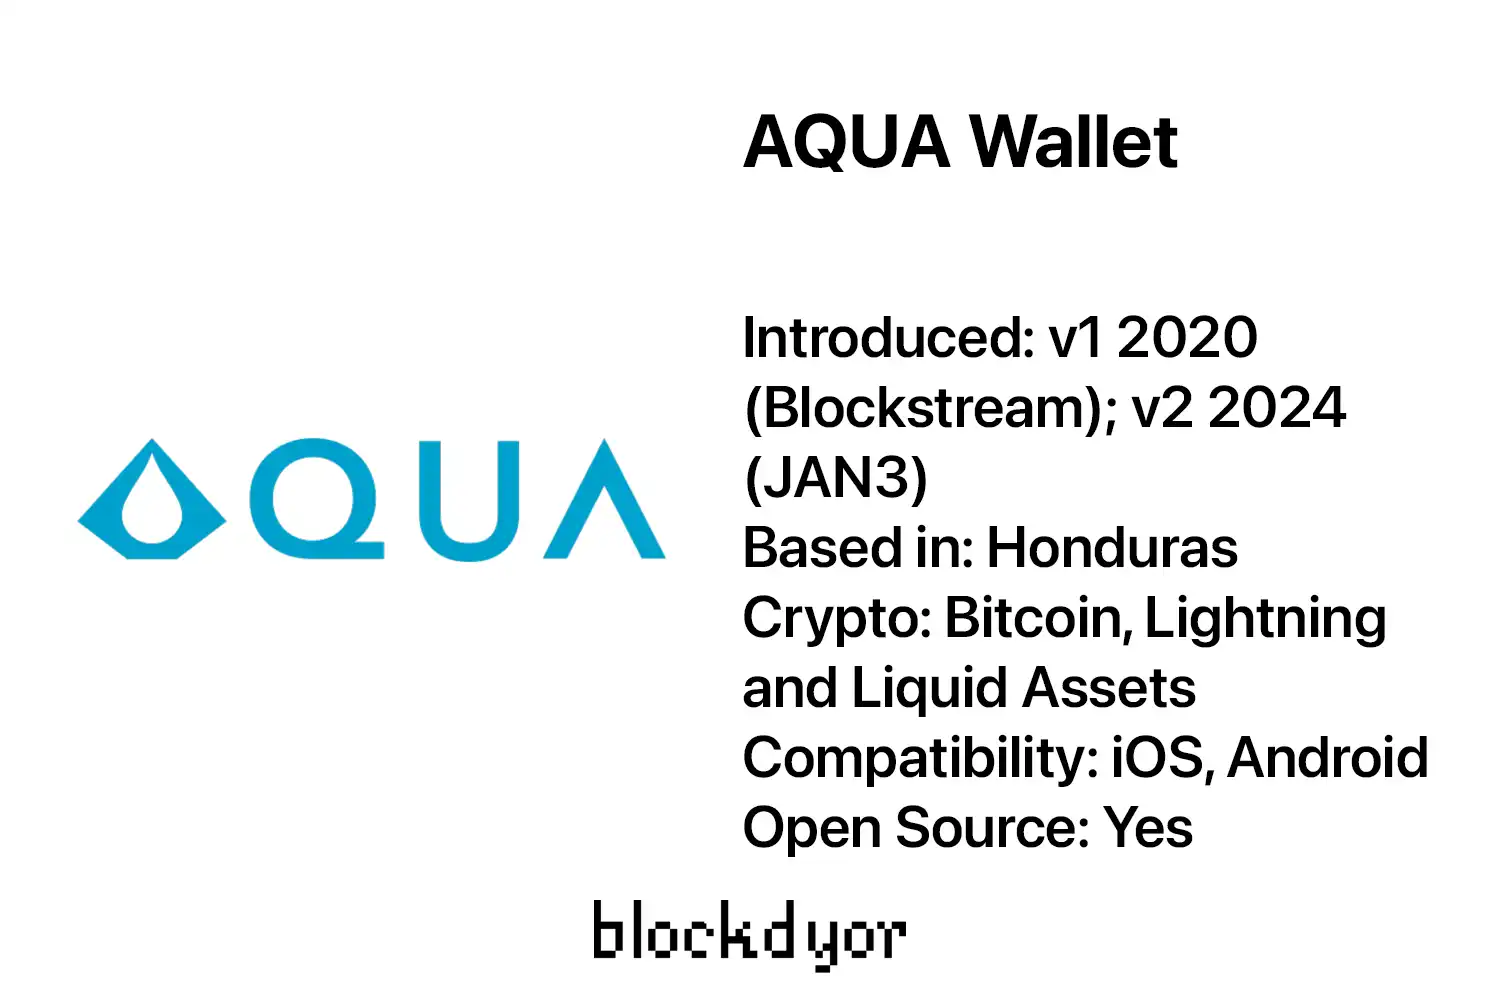 AQUA Wallet Overview